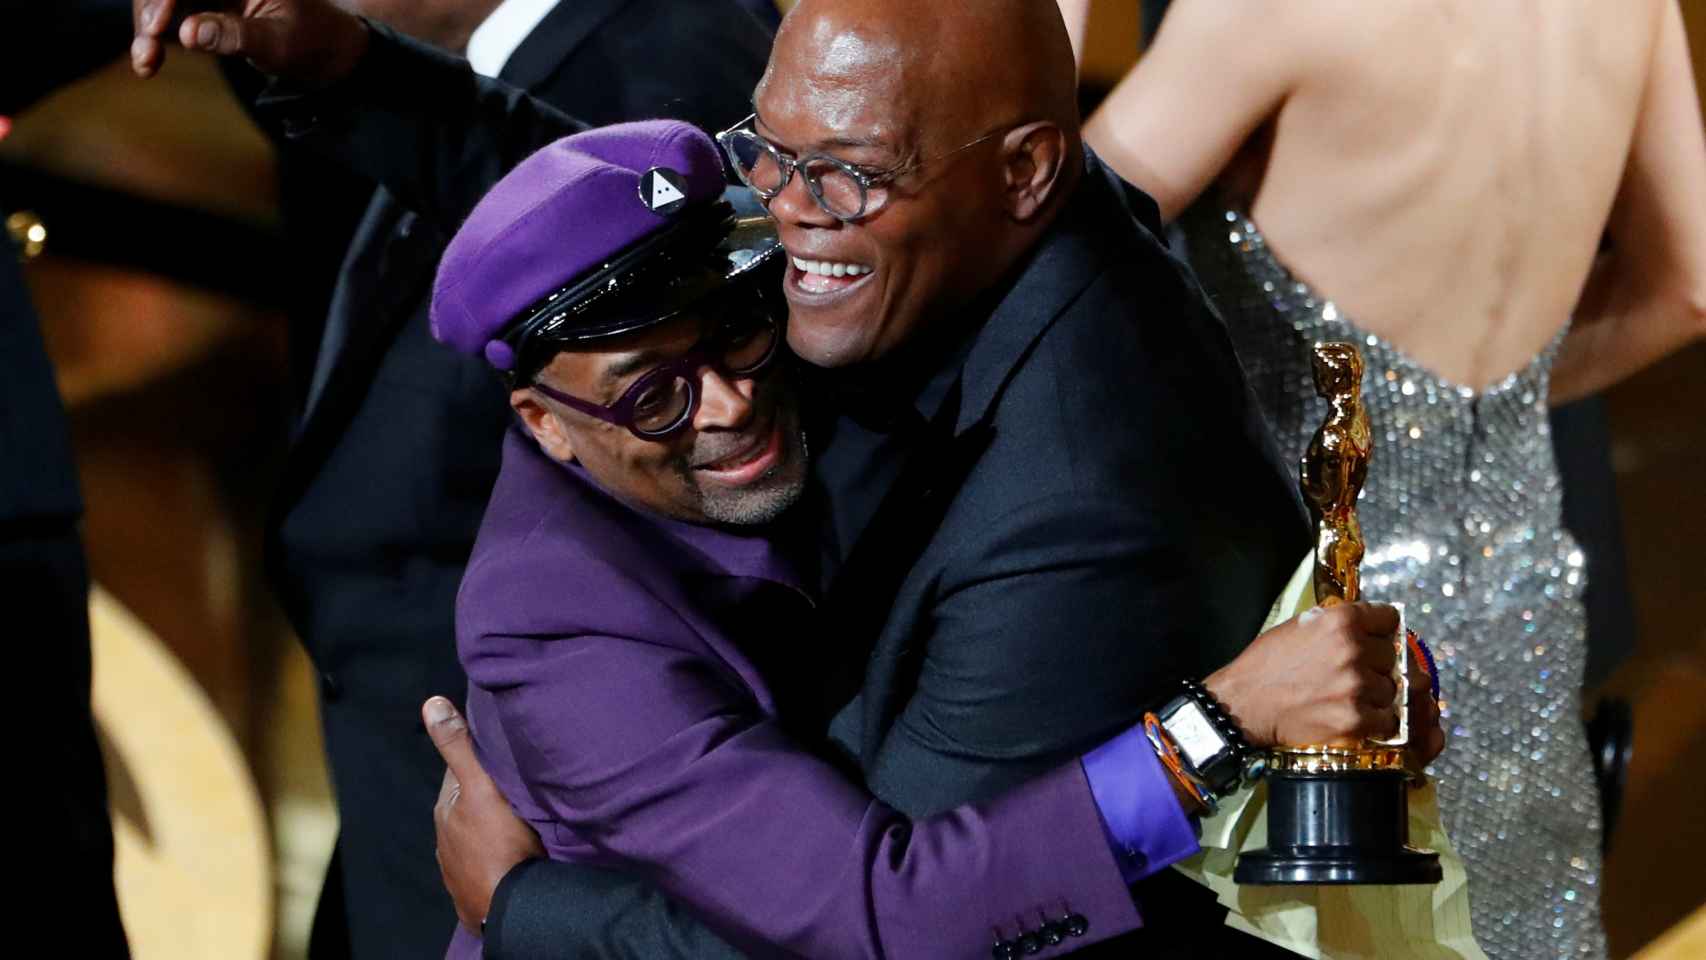 La agencia de talentos de Spike Lee y Samuel L. Jackson es acusada de racismo, acoso y abusos.